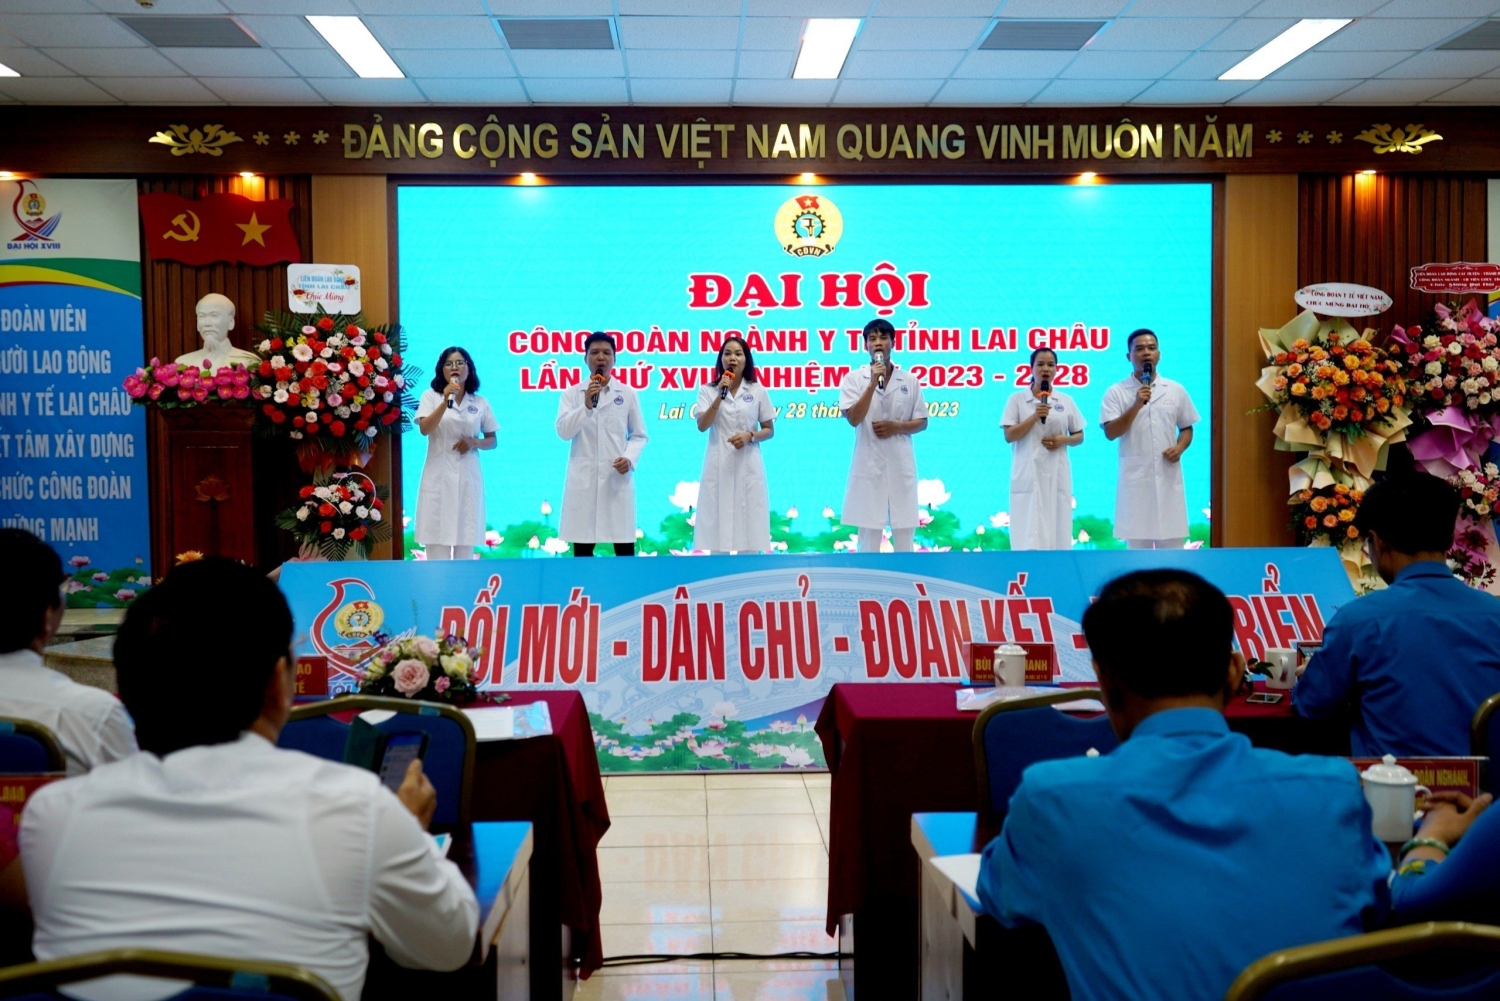 Công đoàn ngành Y tế Lai Châu sôi nổi trong các phong trào thi đua, yêu nước chào mừng thành công Đại hội công đoàn các cấp và Đại hội XIII Công đoàn Việt Nam, nhiệm kỳ 2023-2028